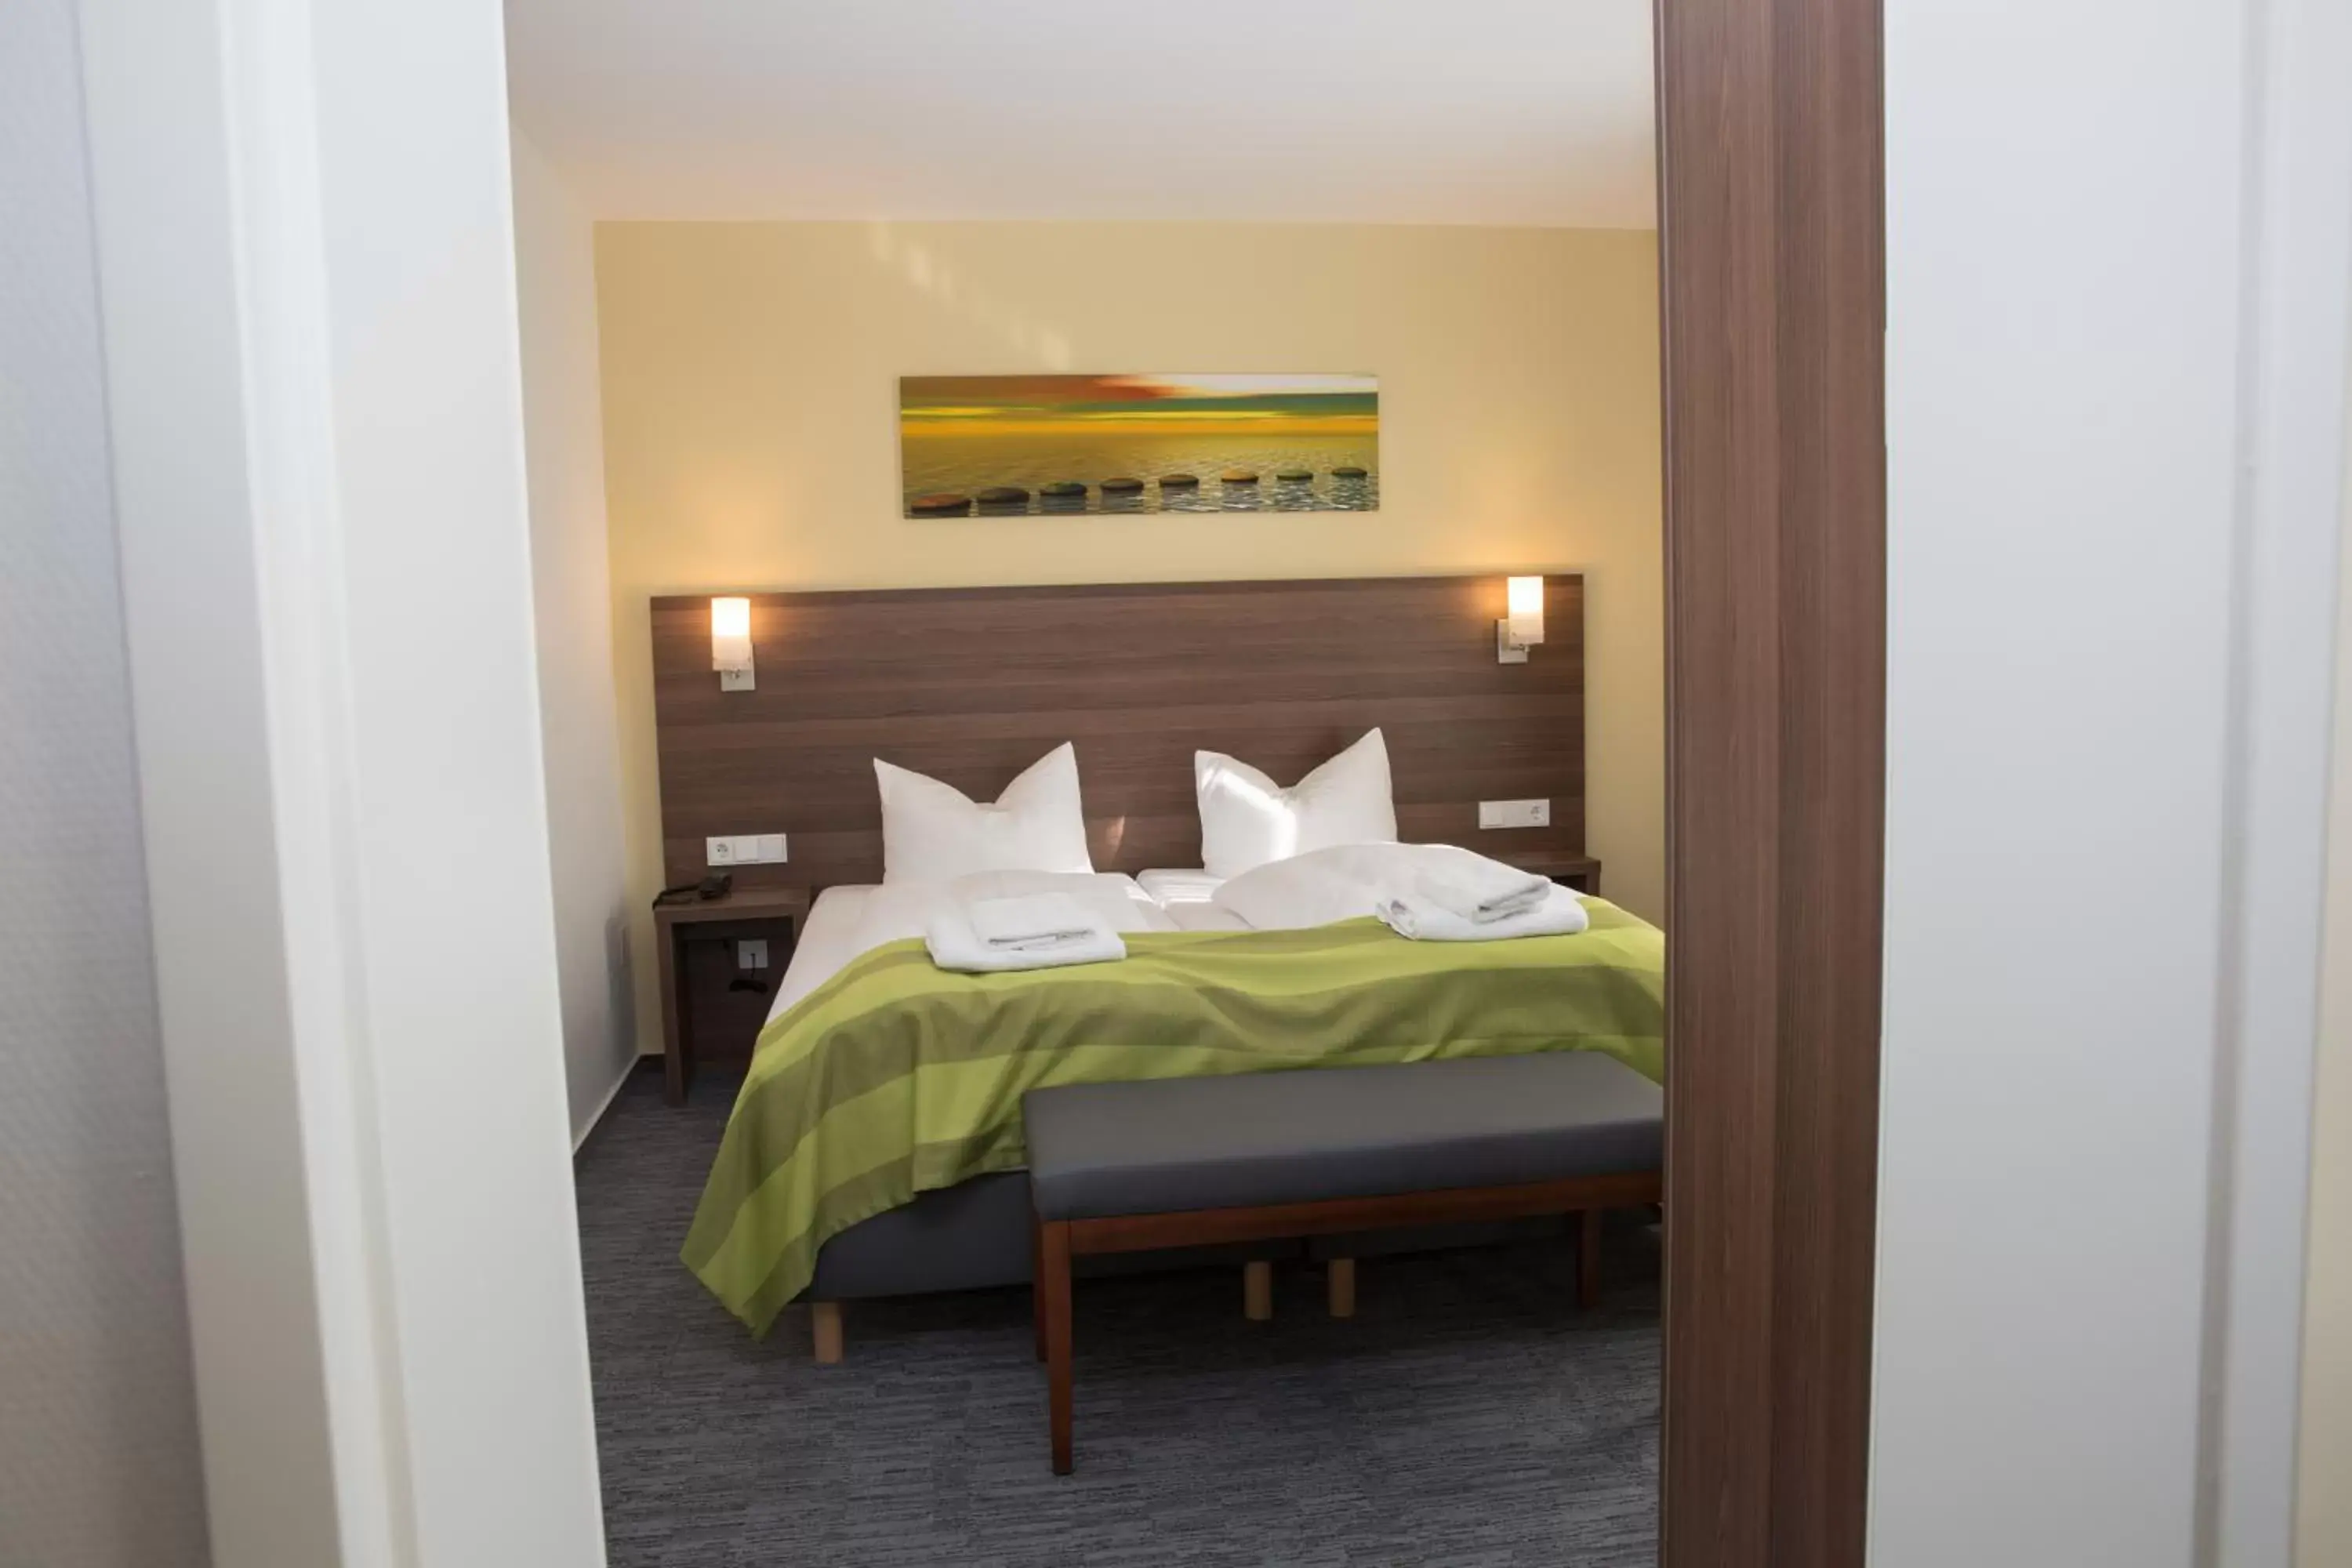 Bedroom, Room Photo in Goethe Business Hotel by Trip Inn